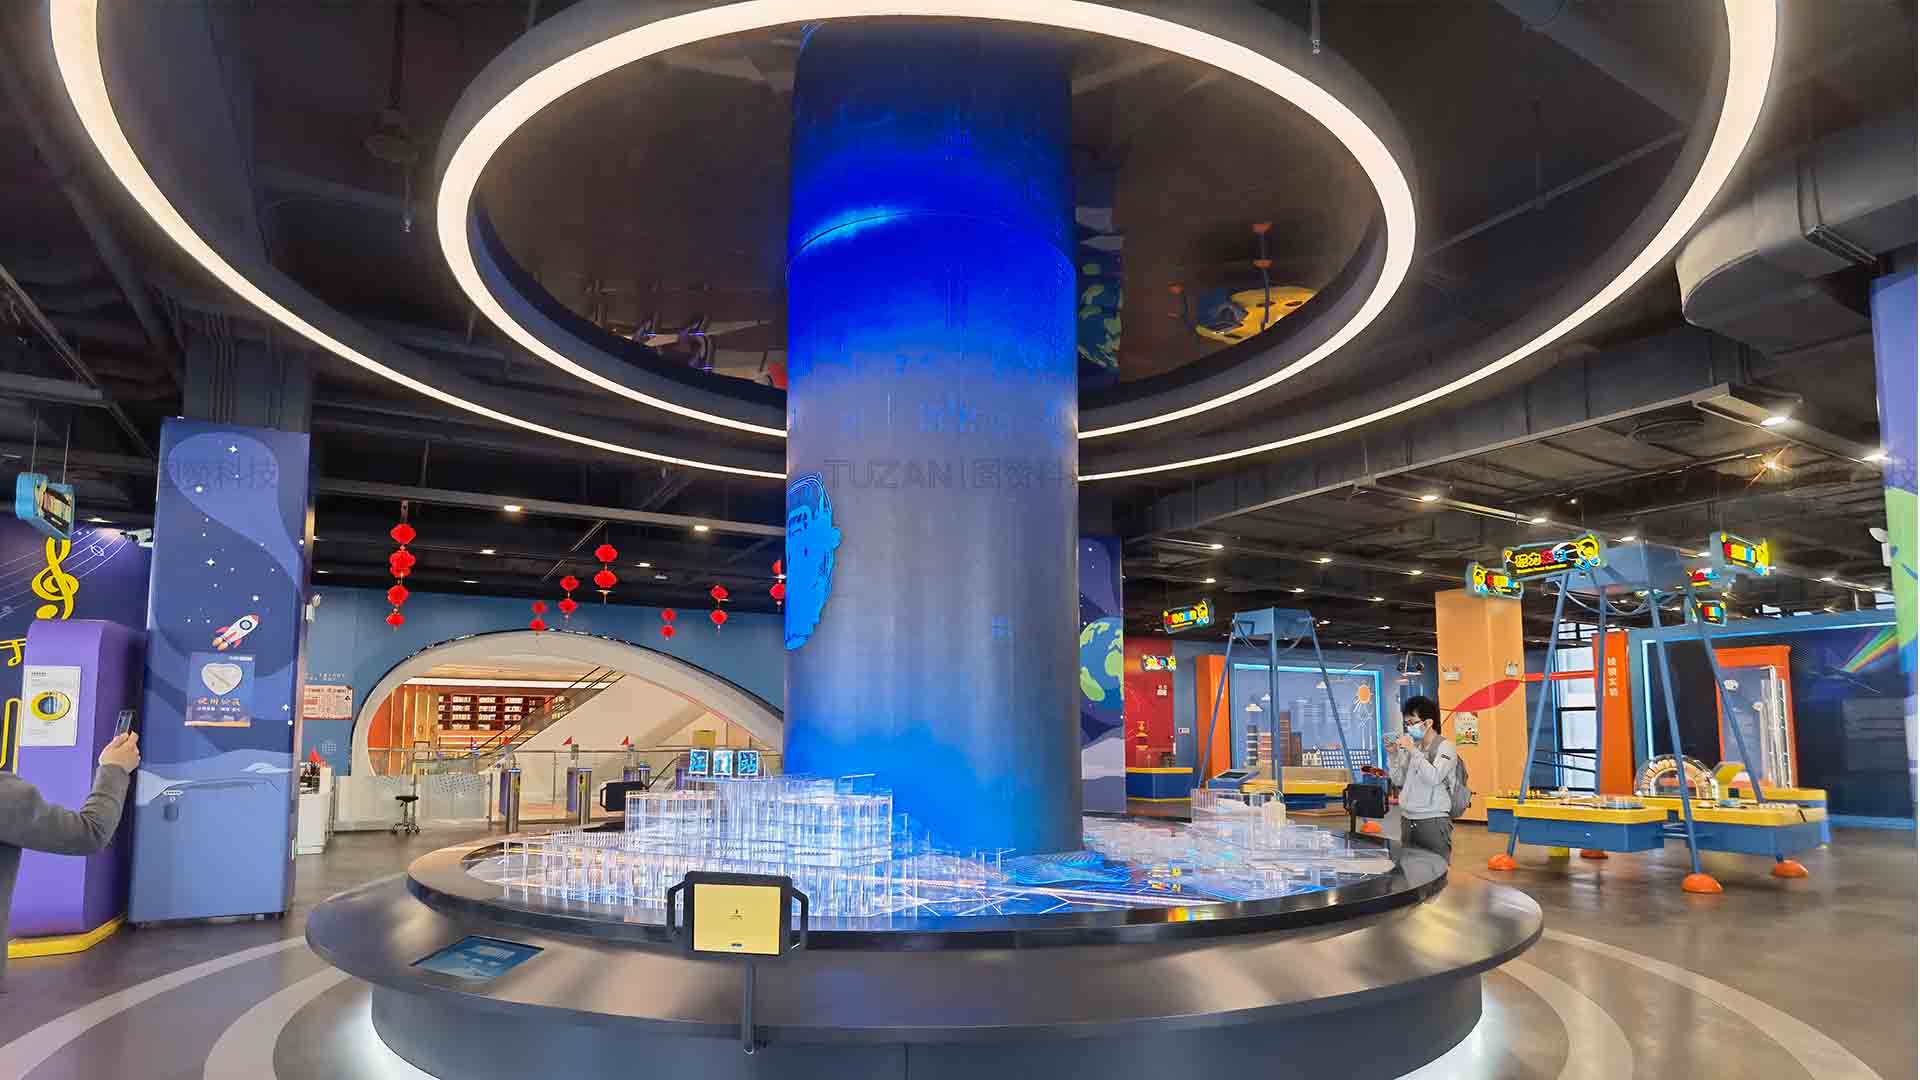 江门科技馆乃多媒体展厅的亮点之作